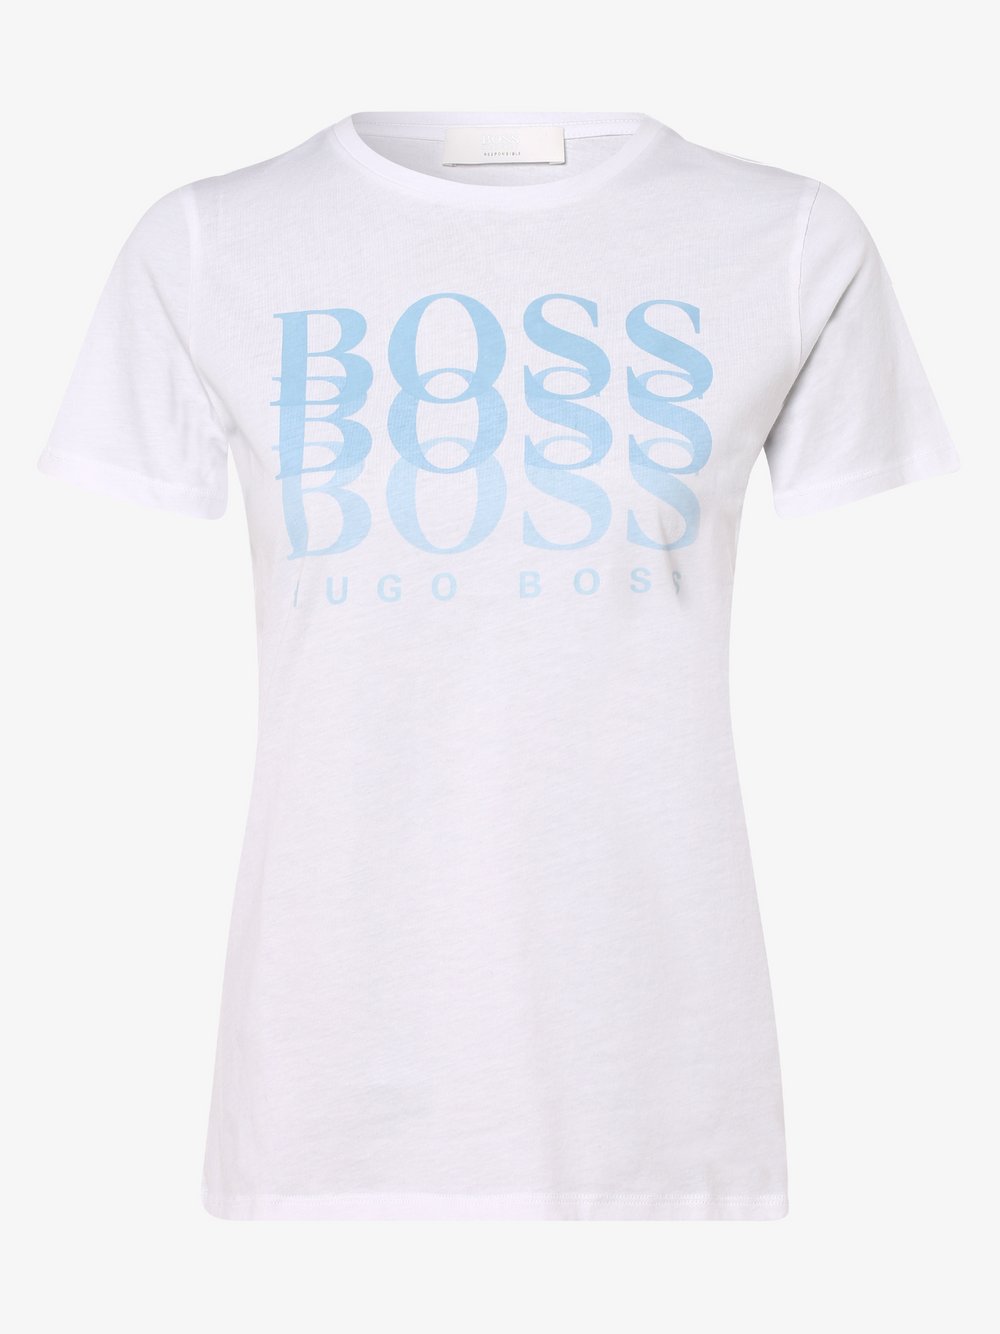 BOSS Casual - T-shirt damski – C_Eloga1, biały